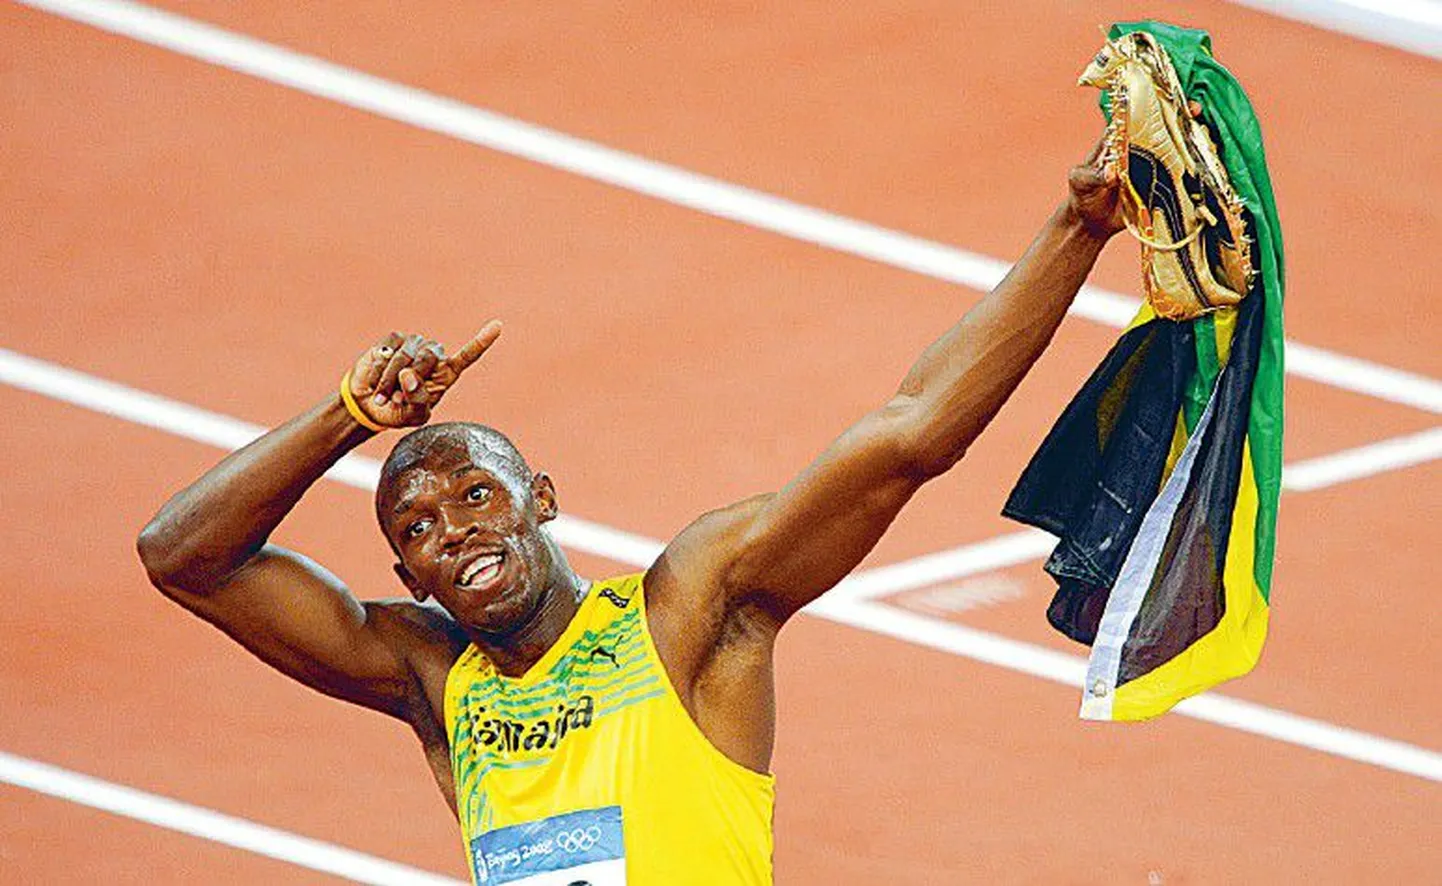 Olümpiale maailmarekordi omanikuna sõitnud Usain Bolt parandas tippmarki ja sai kulla.